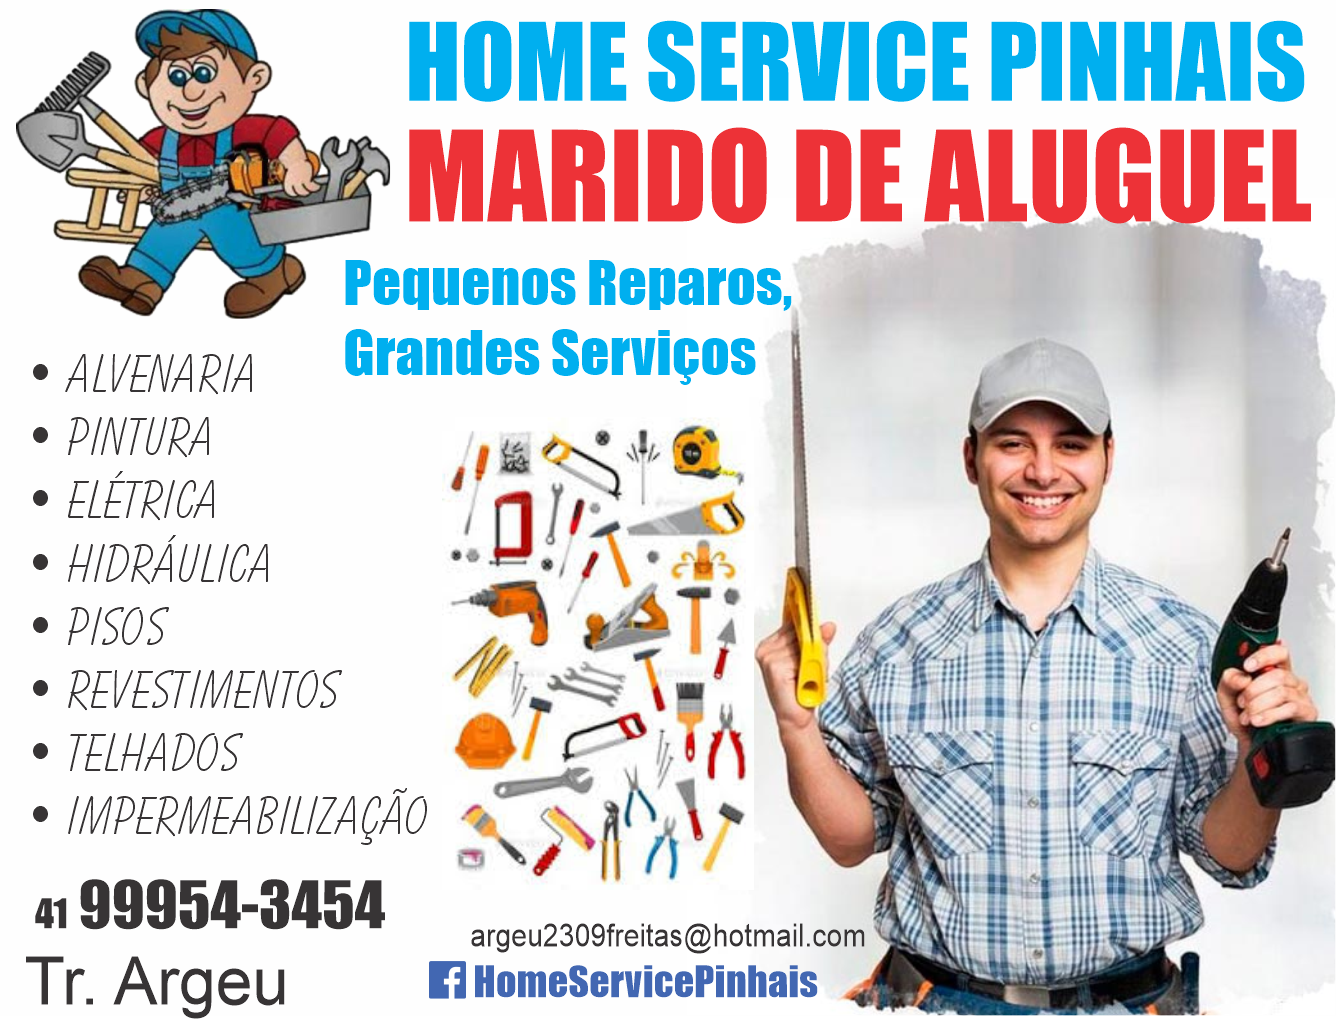  Home Service Pinhais      RUA Gélcio Gonçalves , 685, PINHAIS - PR  Fones: (41)9954-3454 /